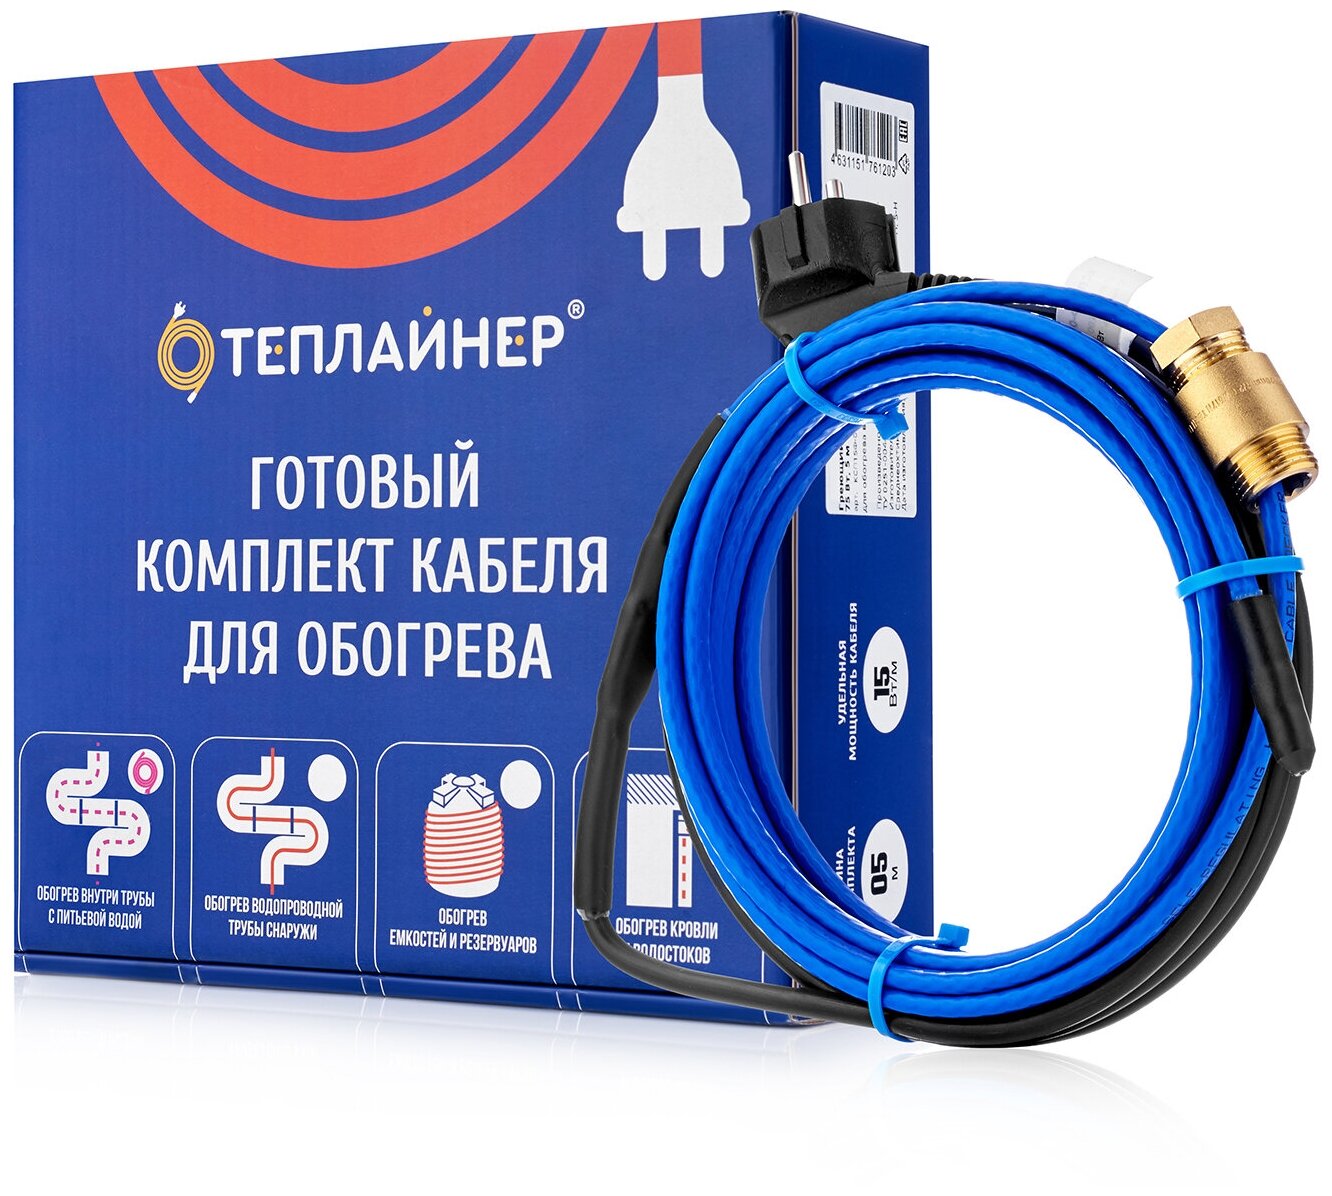 Греющий кабель теплайнер PROFI КСП-10, 40 Вт, 4 м - фотография № 2